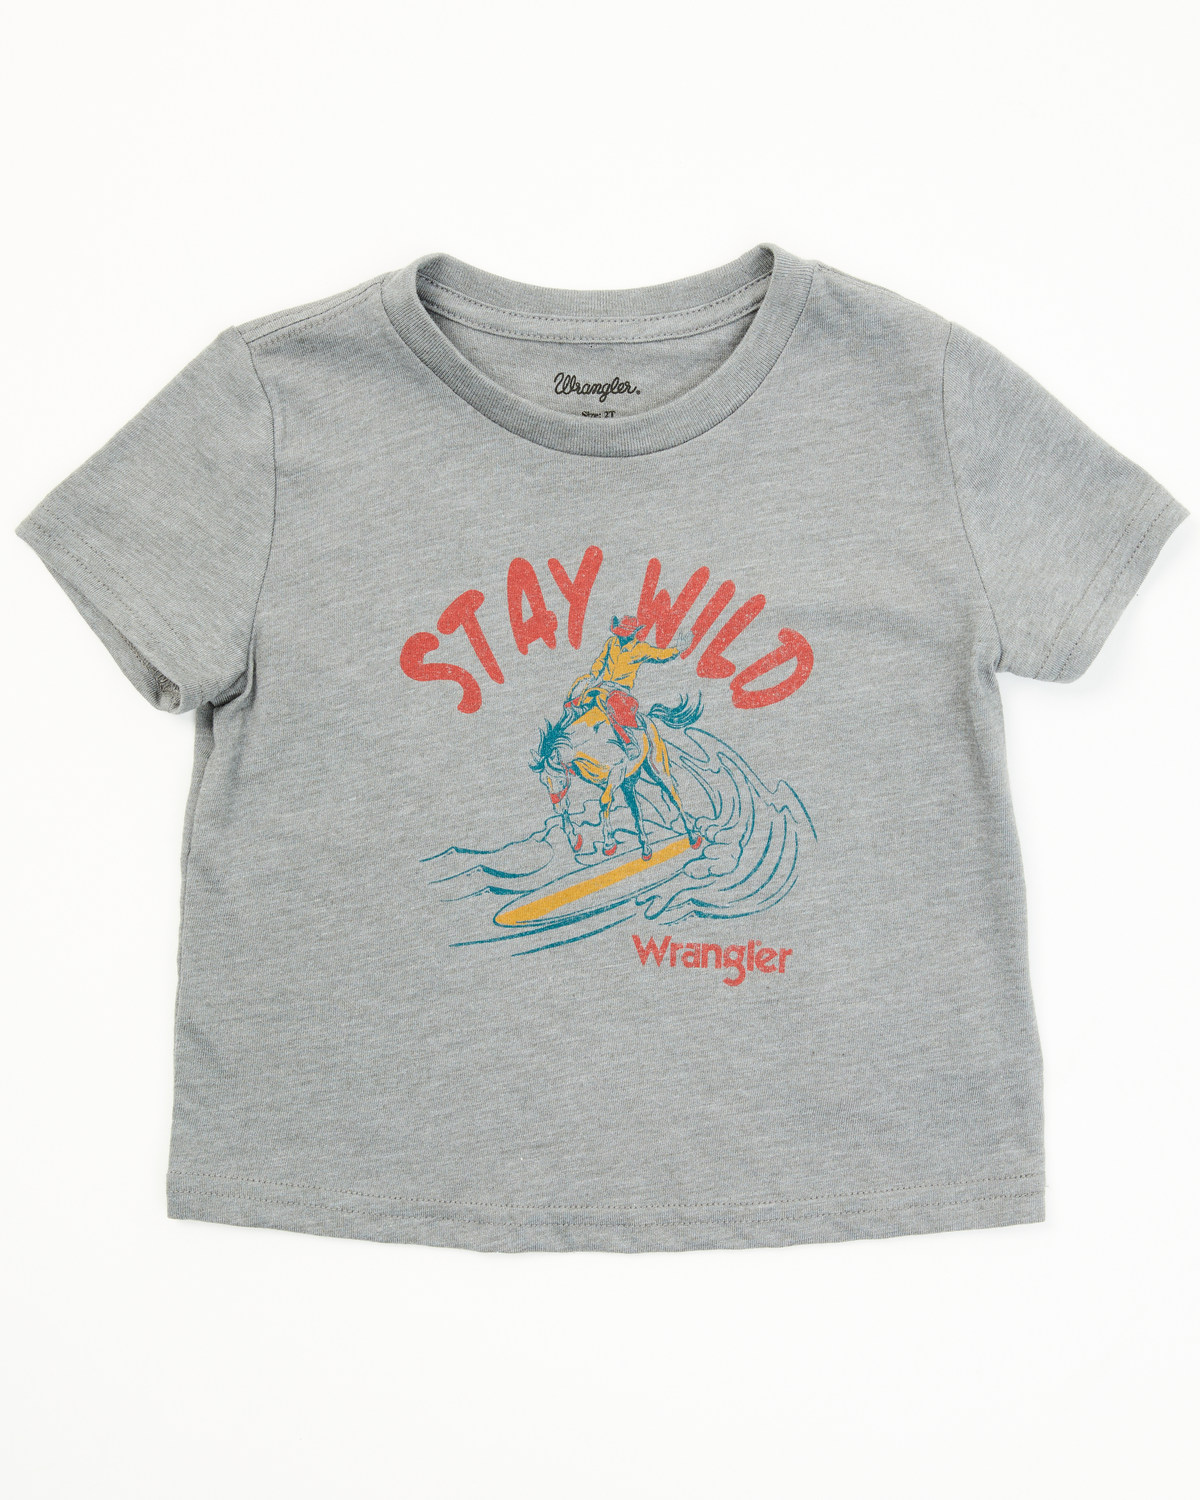 Wrangler Toddler Boys' Stay Wild Short Sleeve Graphic T-Shirt